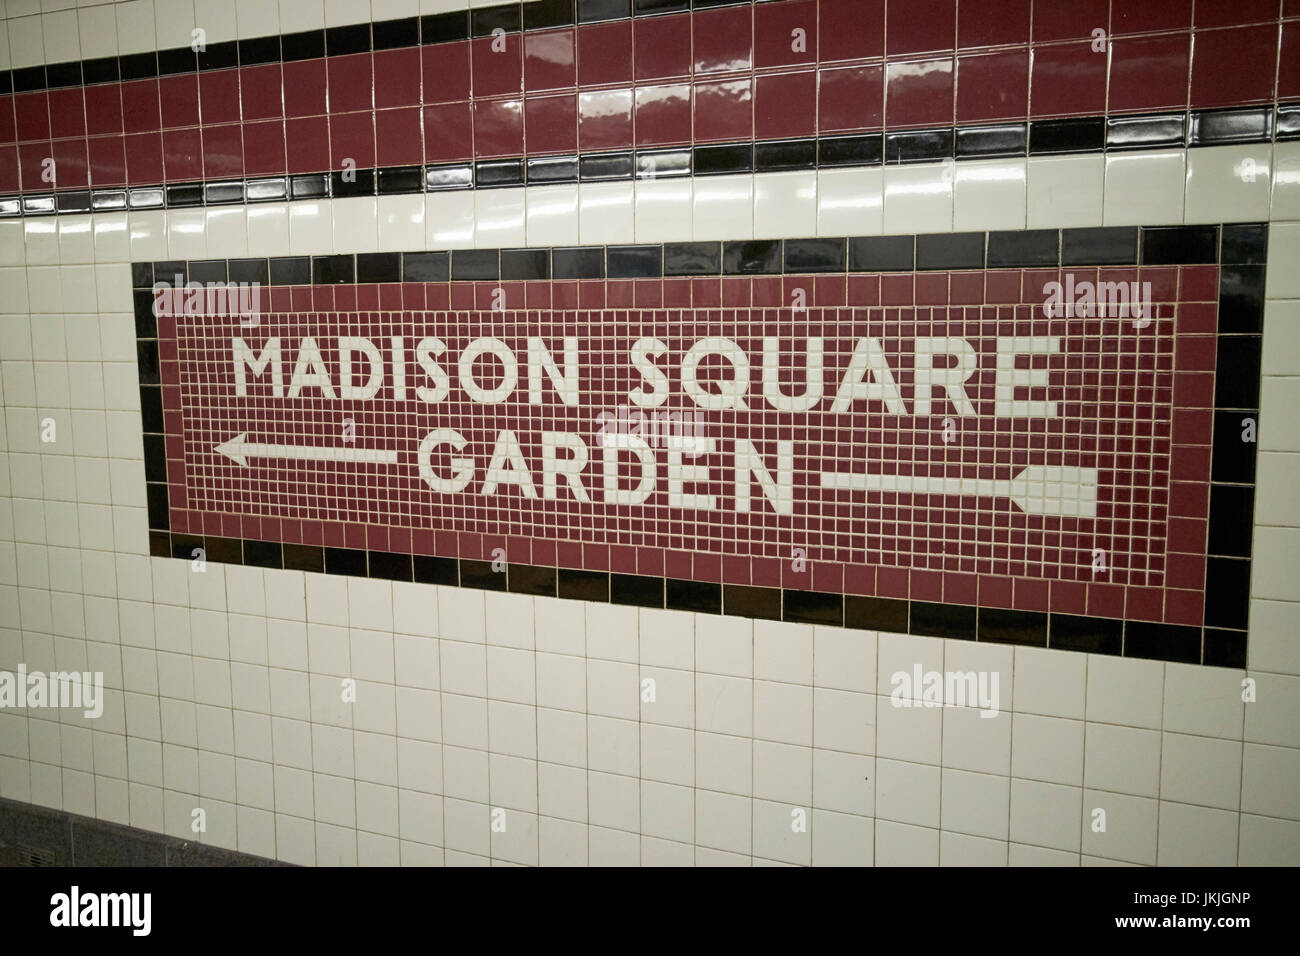 Mosaico in stile vecchia stazione della metropolitana segno per il Madison Square Garden, Penn Station New York City USA Foto Stock